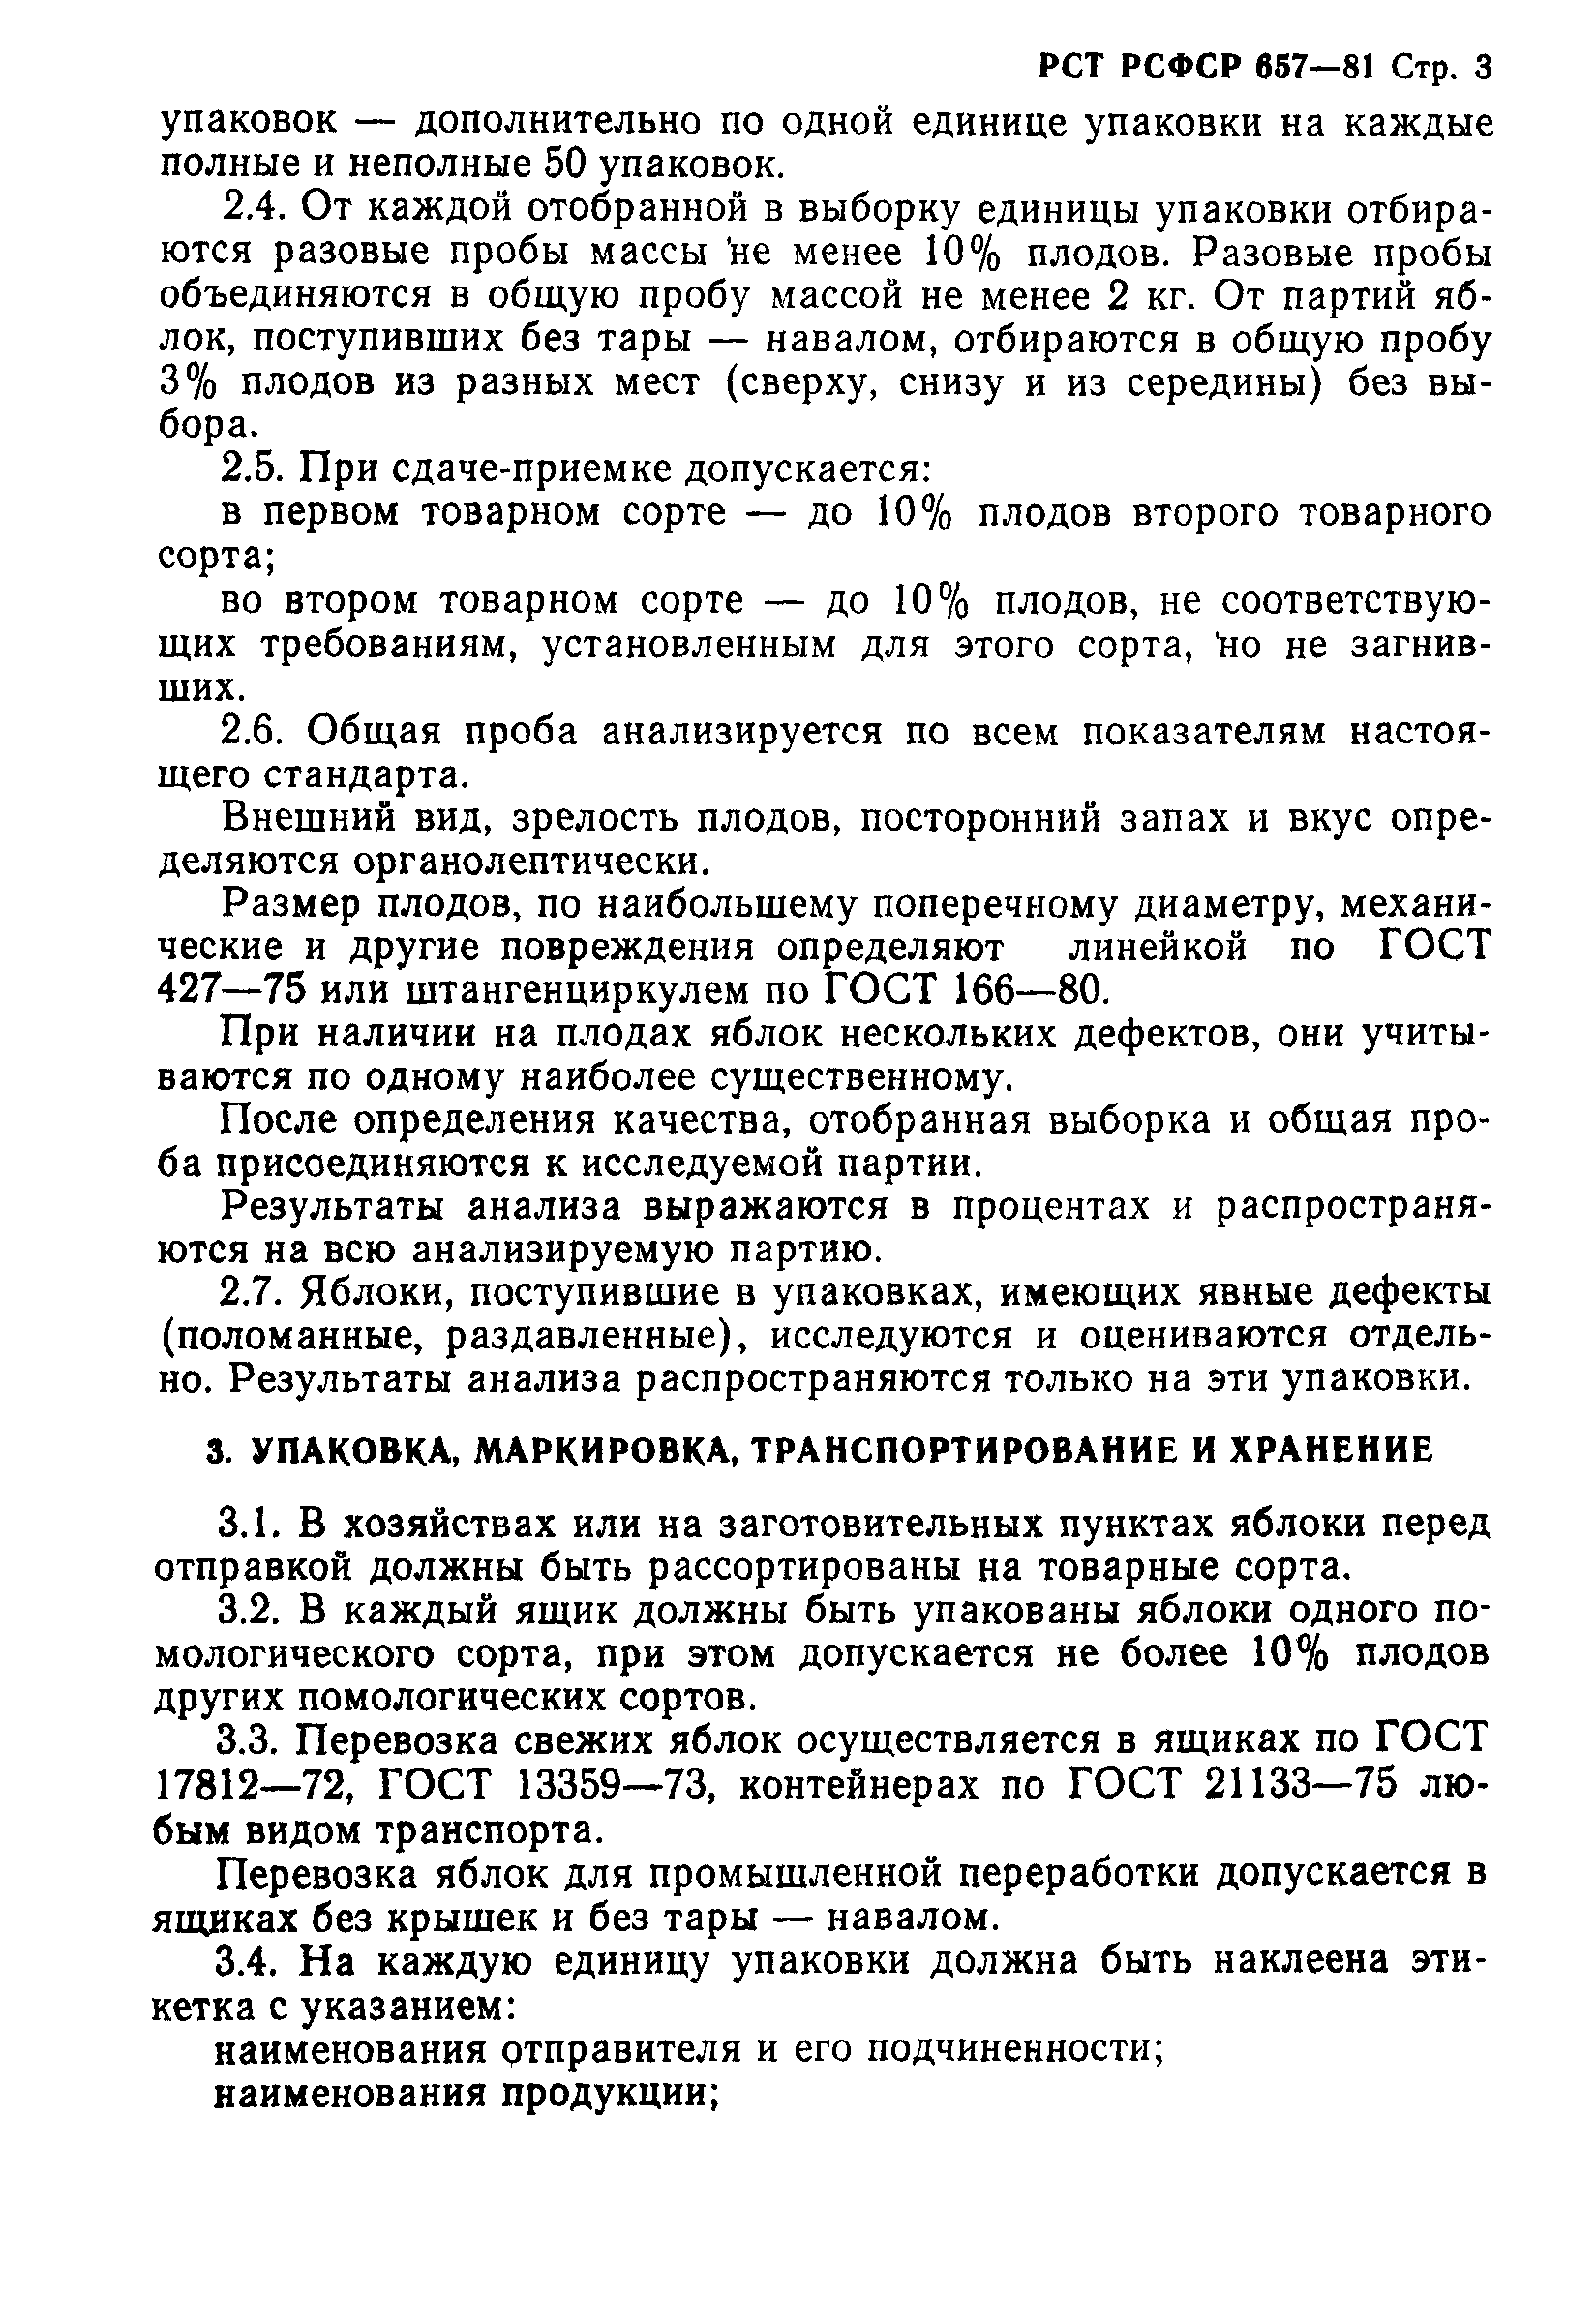 РСТ РСФСР 657-81